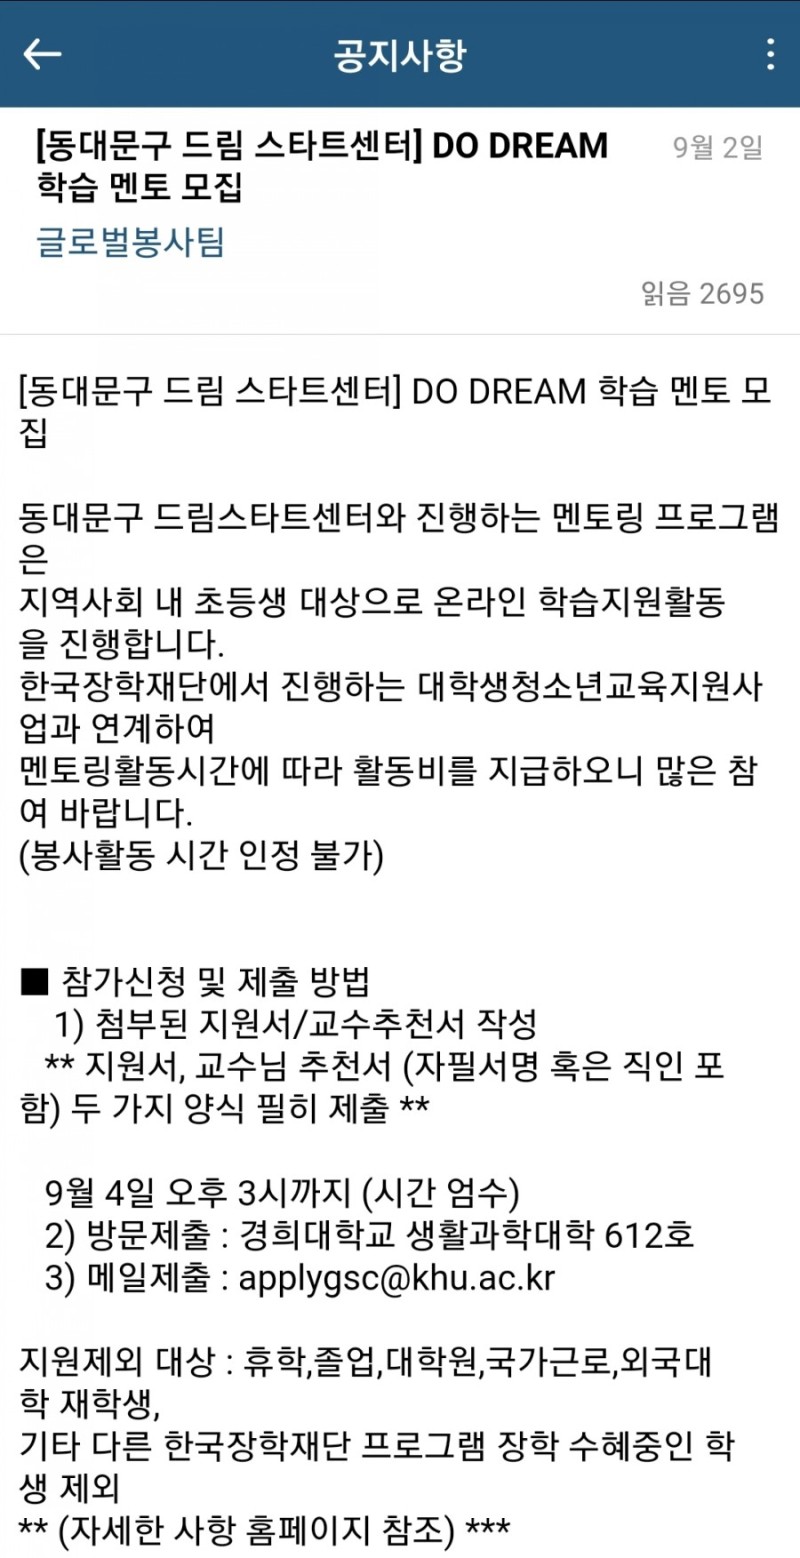 2020-2] 한국장학재단 동대문구 드림스타트센터 Do Dream 학습 멘토 도전! (+교수님 추천서 받았던 과정) : 네이버 블로그